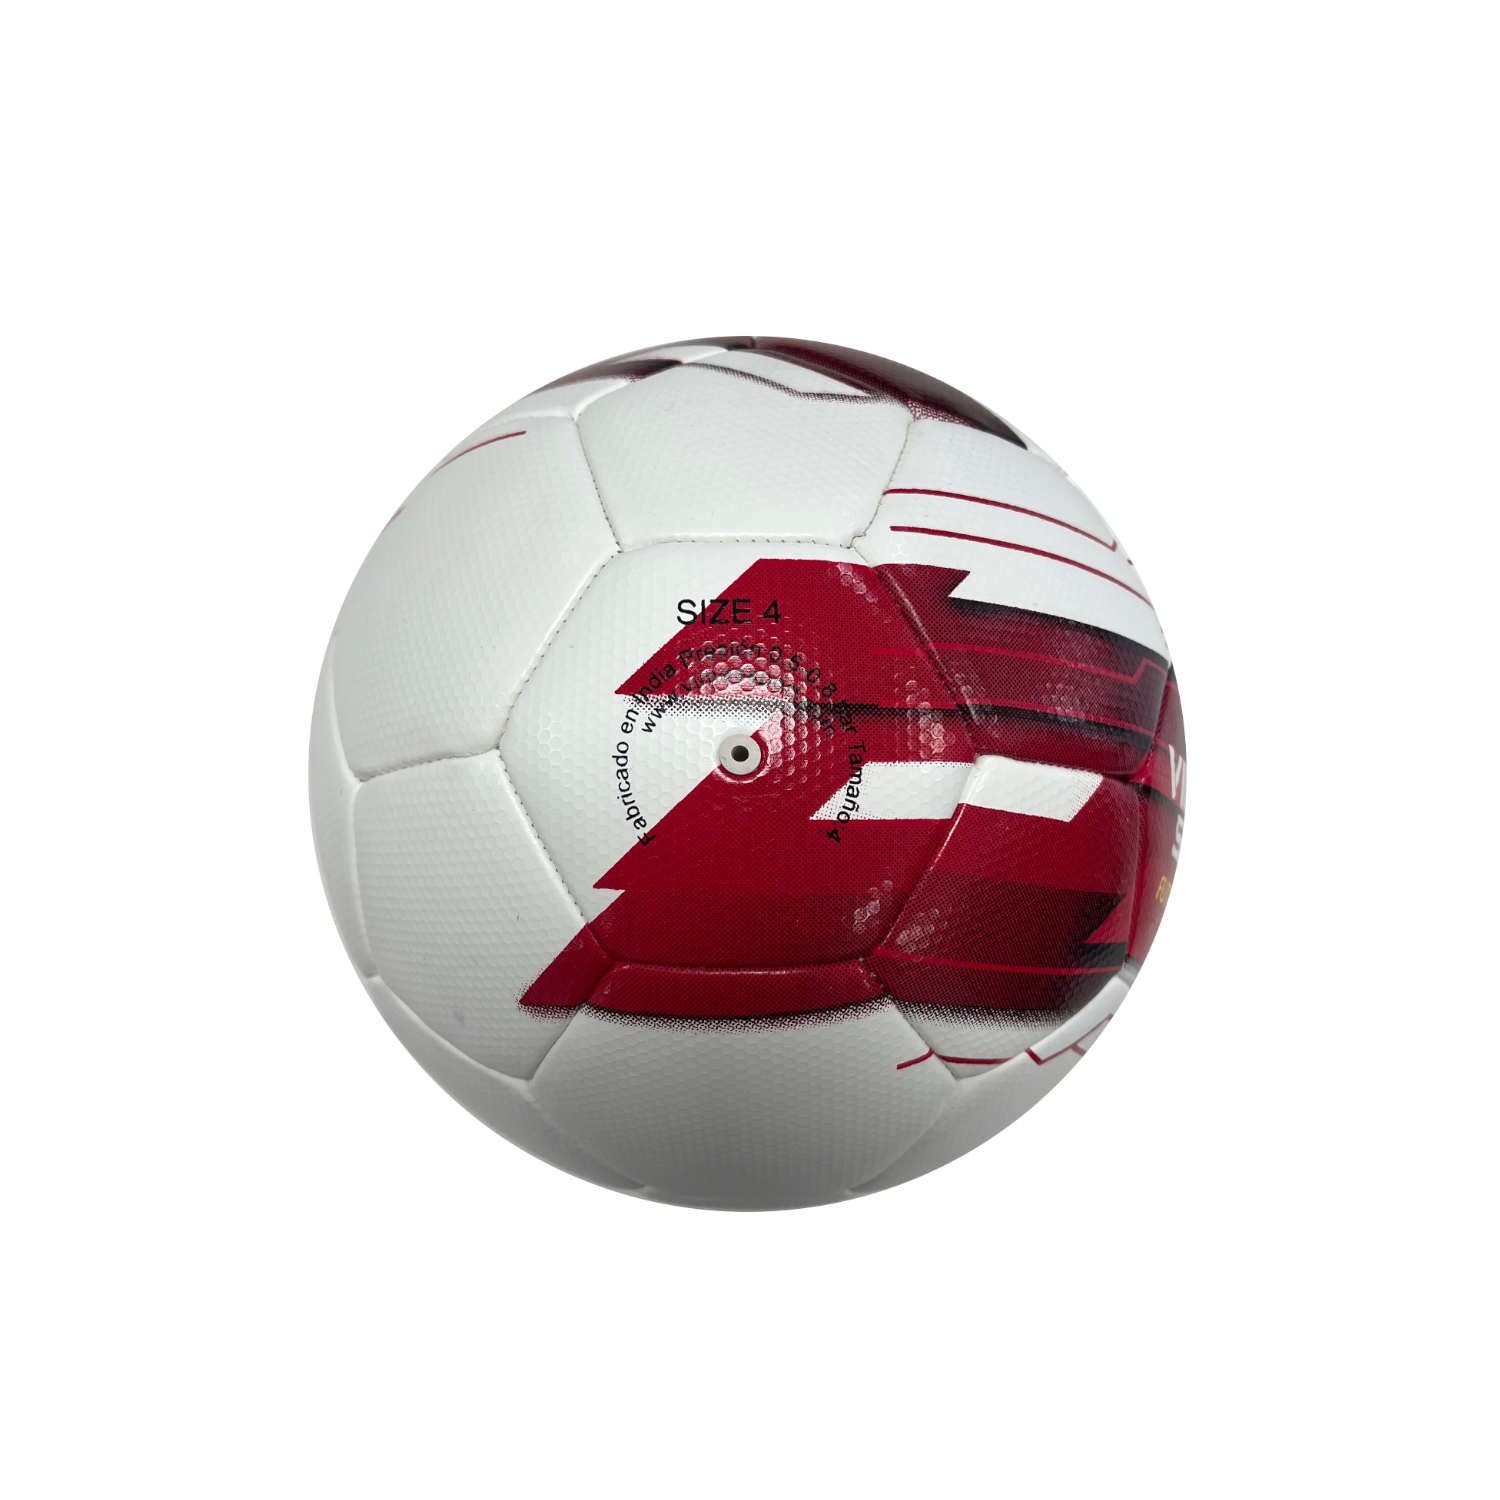 Balon Futbol Vimas Sport Future 3.0